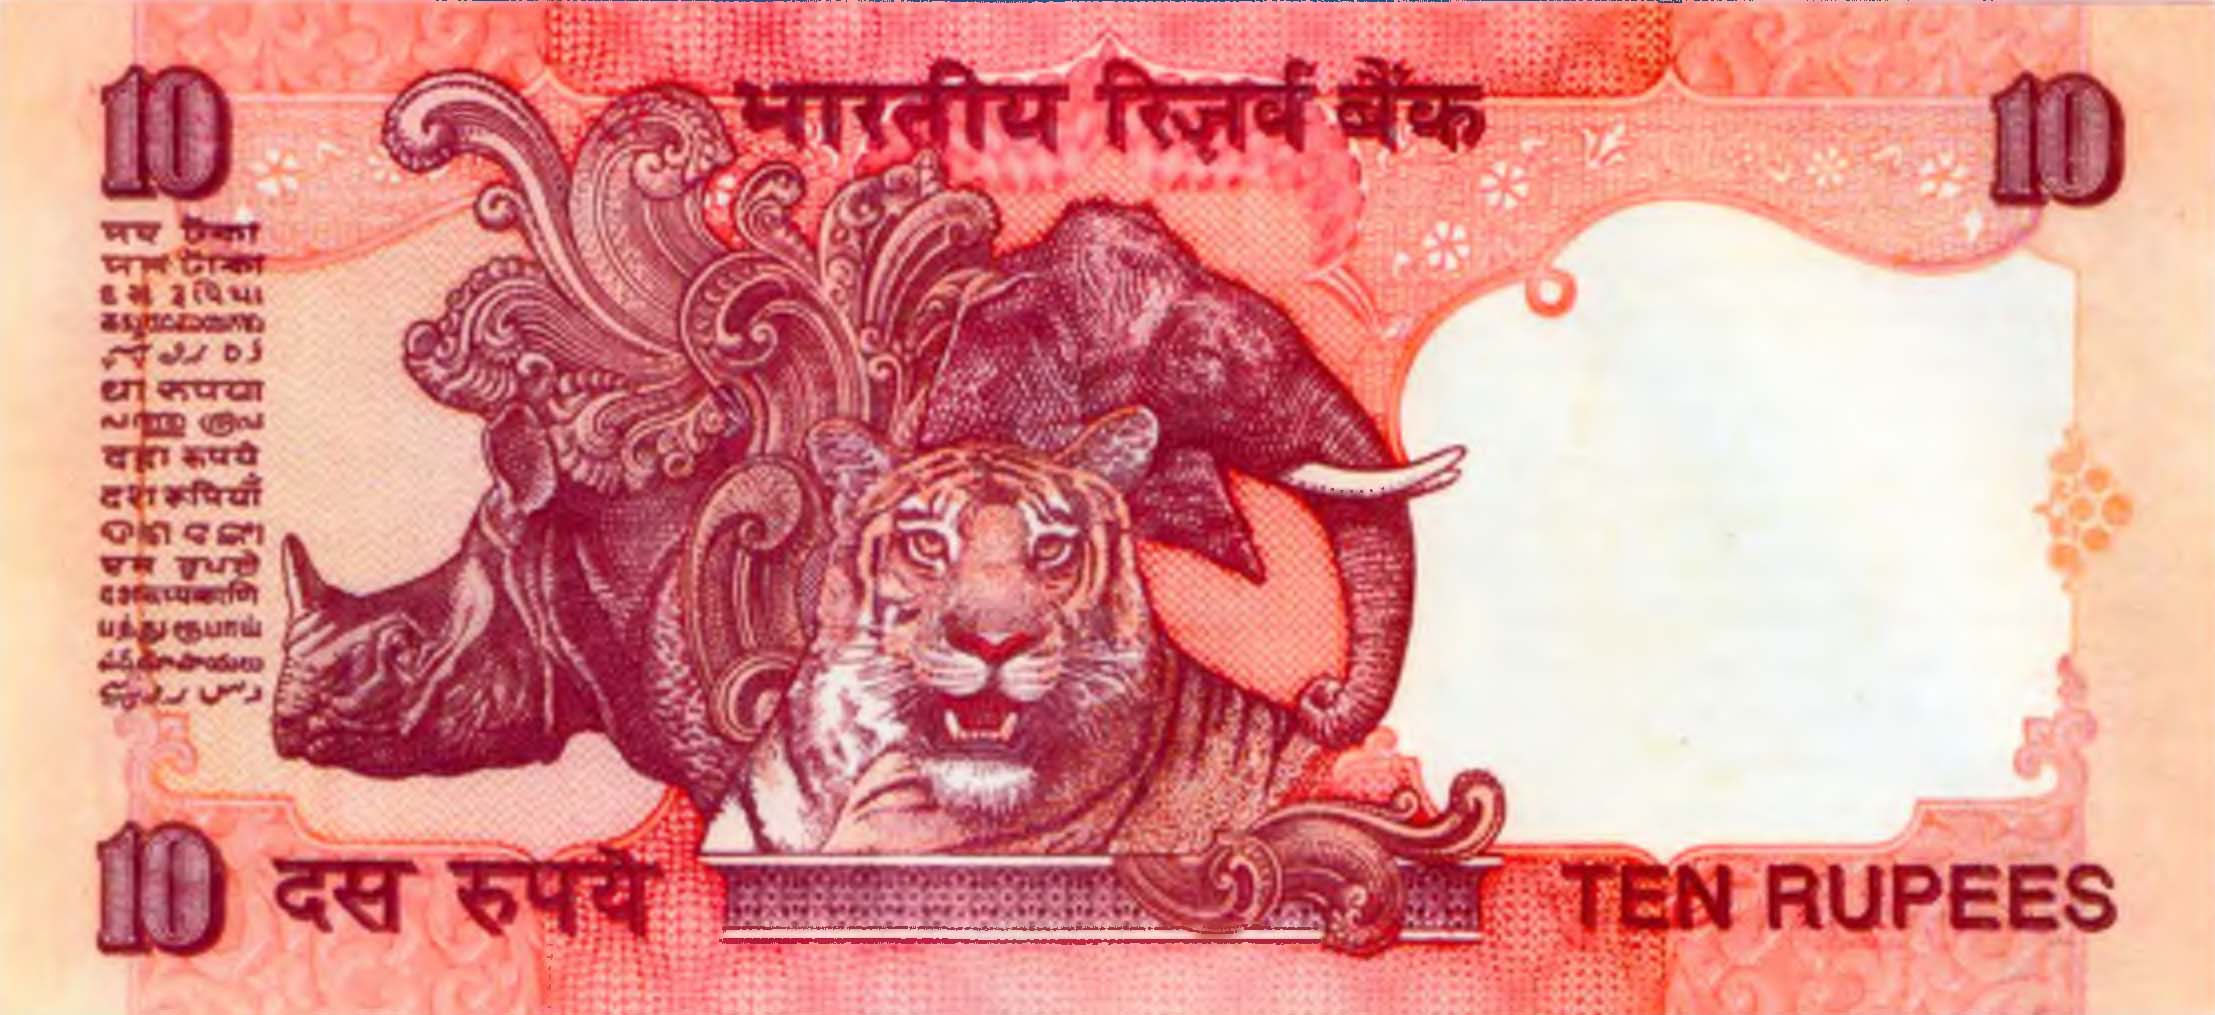 10 рупий, Индия, 1996 г.